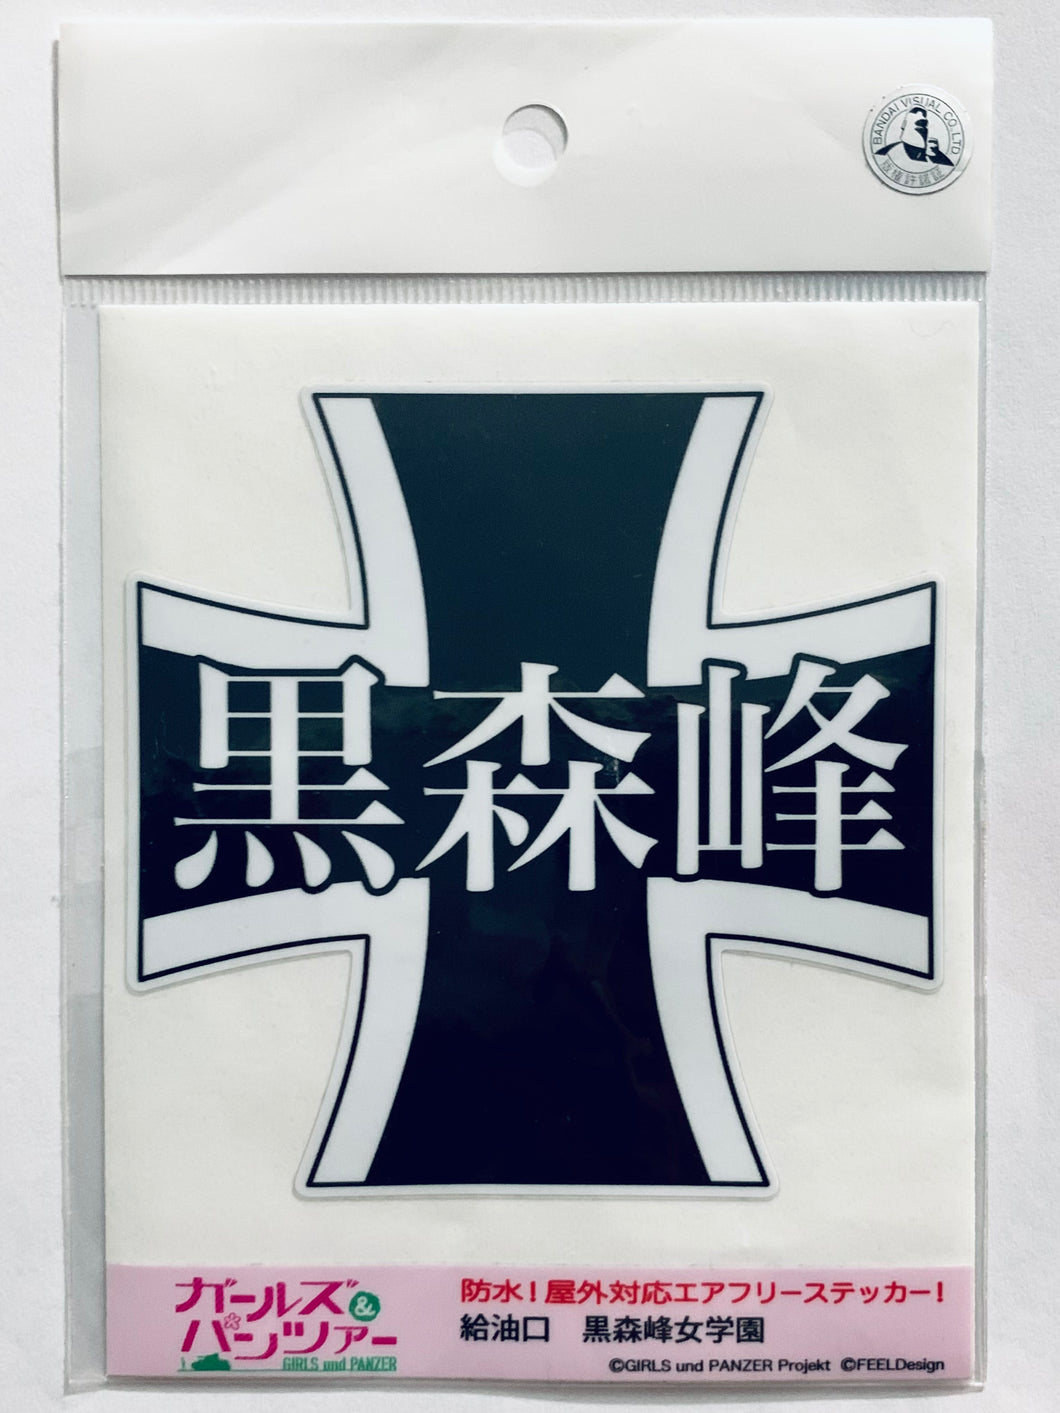 Girls und Panzers - Kuromori Mine Girls' School Emblem - Waterproof Outdoor Air-free Sticker - Fuel Filler